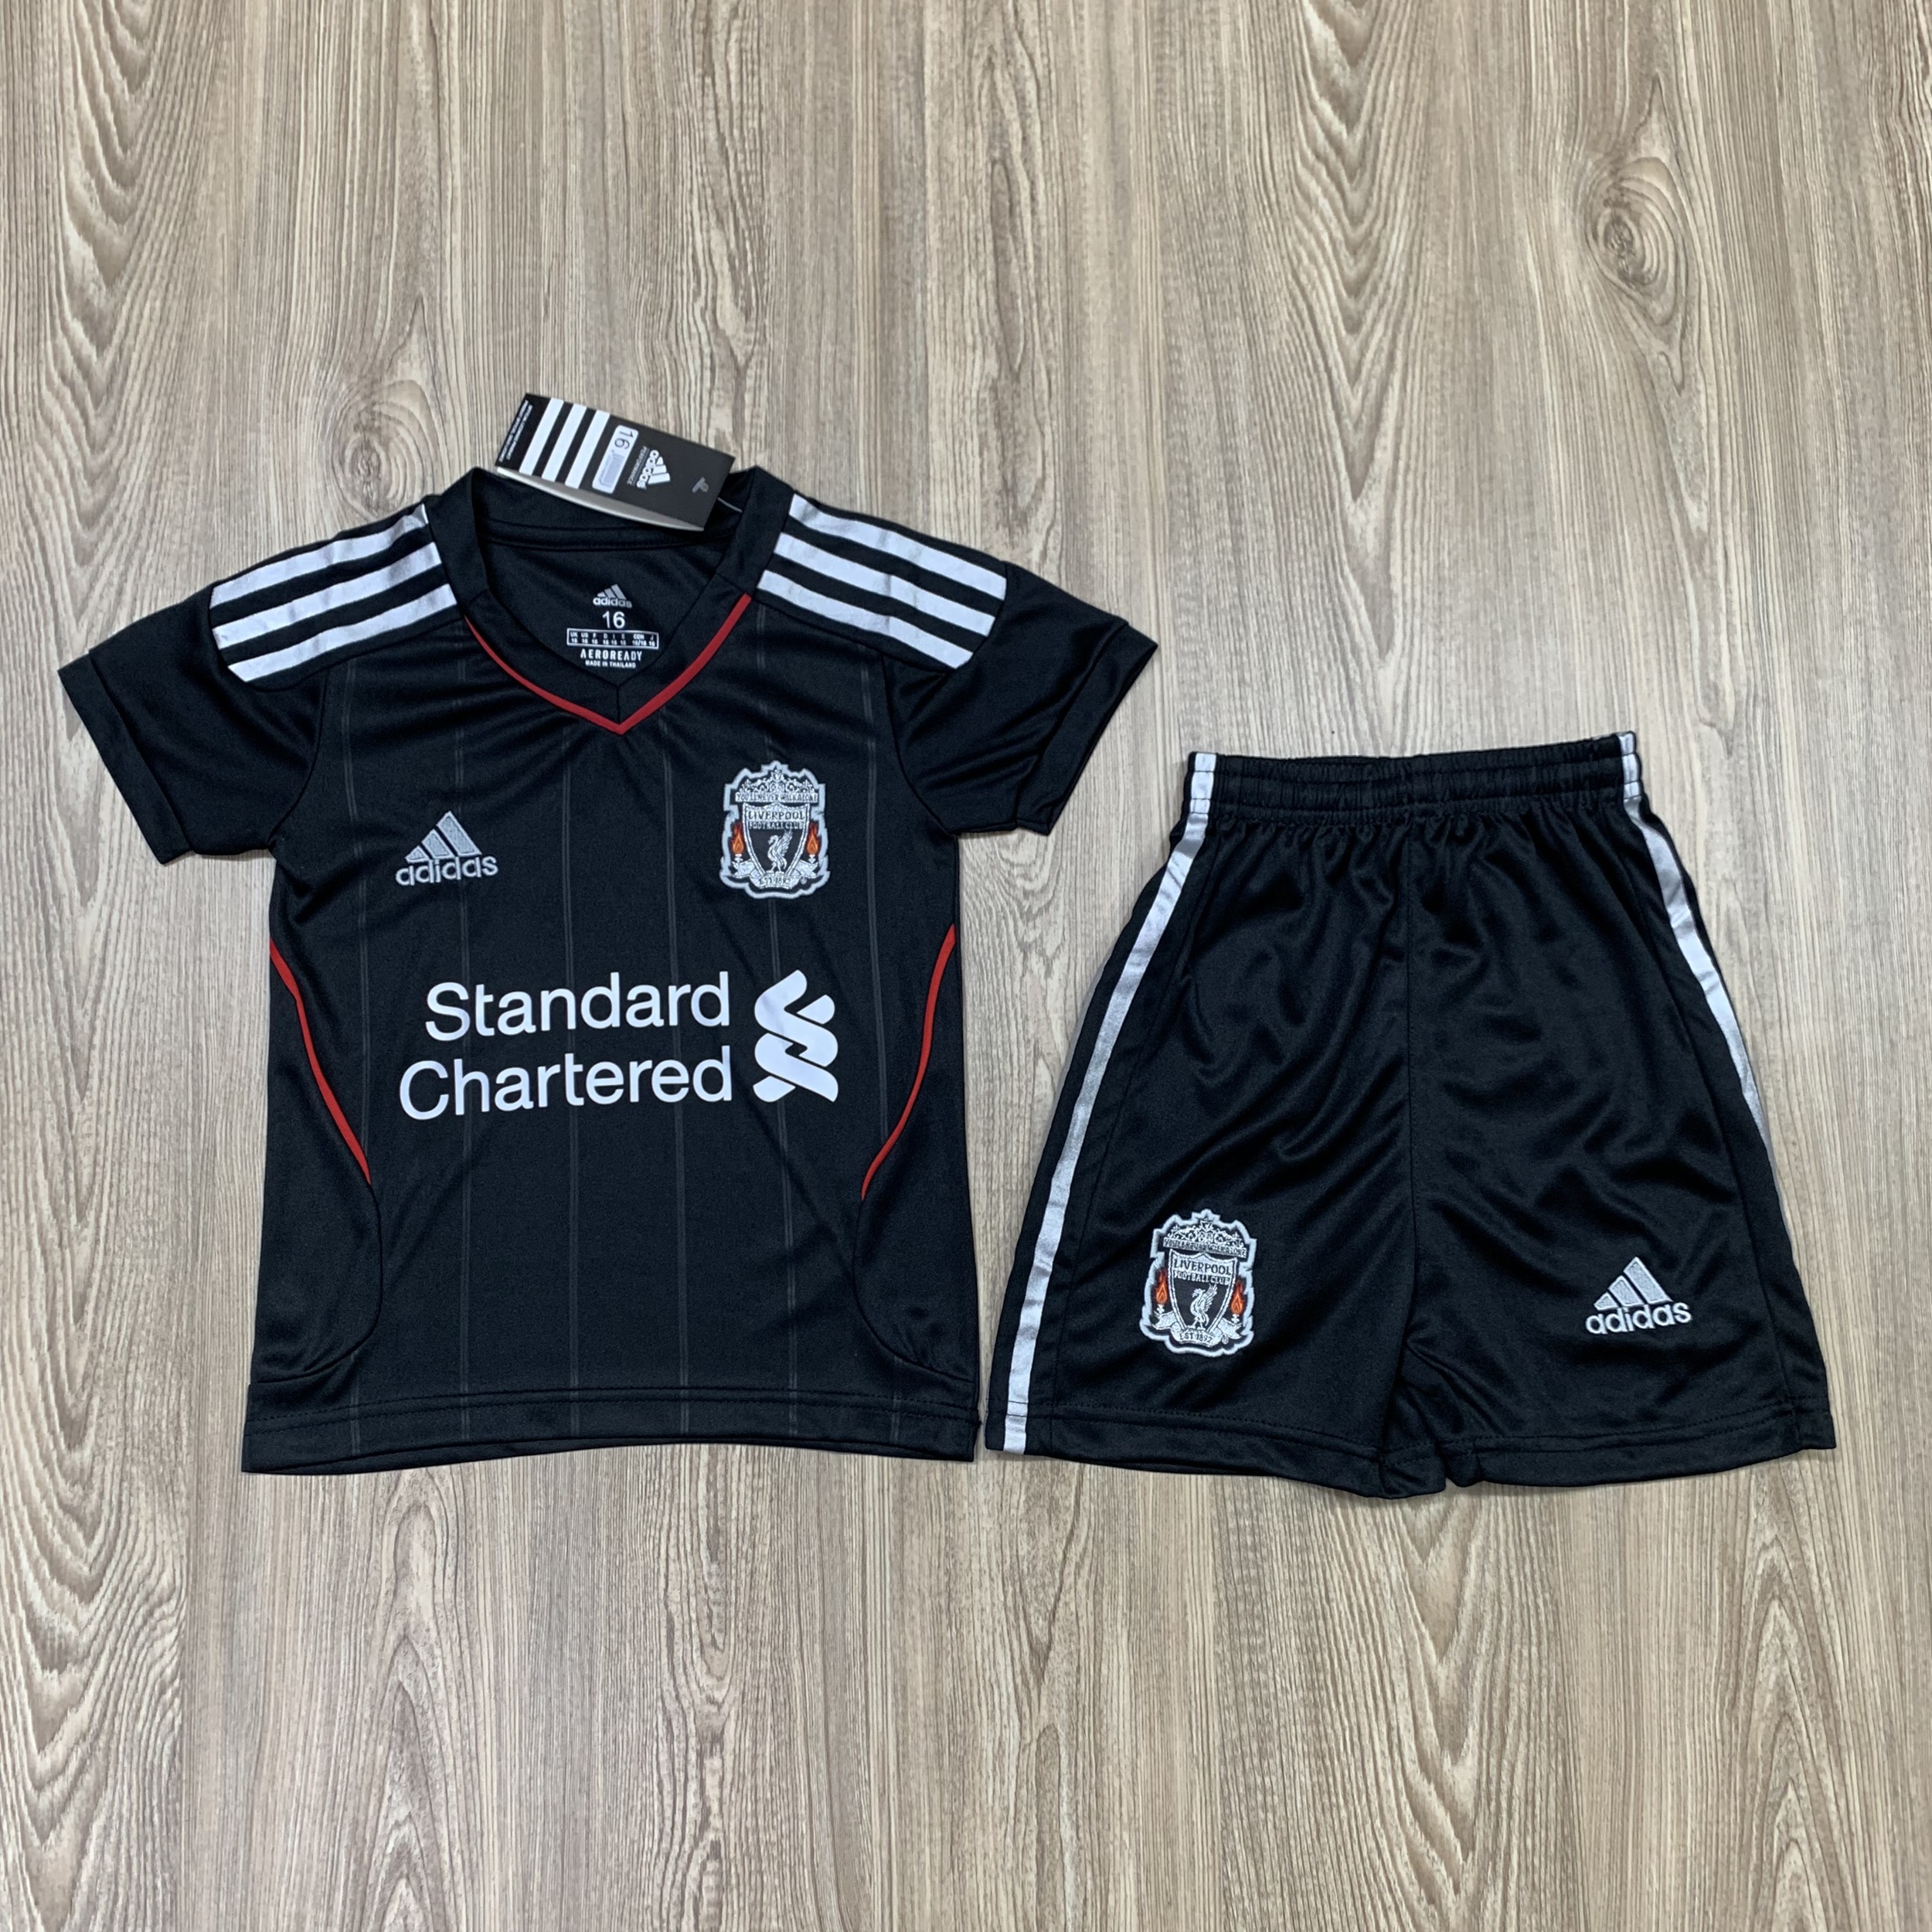 ชุดบอลเด็ก Liverpool ชุดกีฬาเด็ก ทีมลิเวอร์พูล  ซื้อครั้งเดียวได้ทั้งชุด (เสื้อ+กางเกง) ตัวเดียวในราคาส่ง